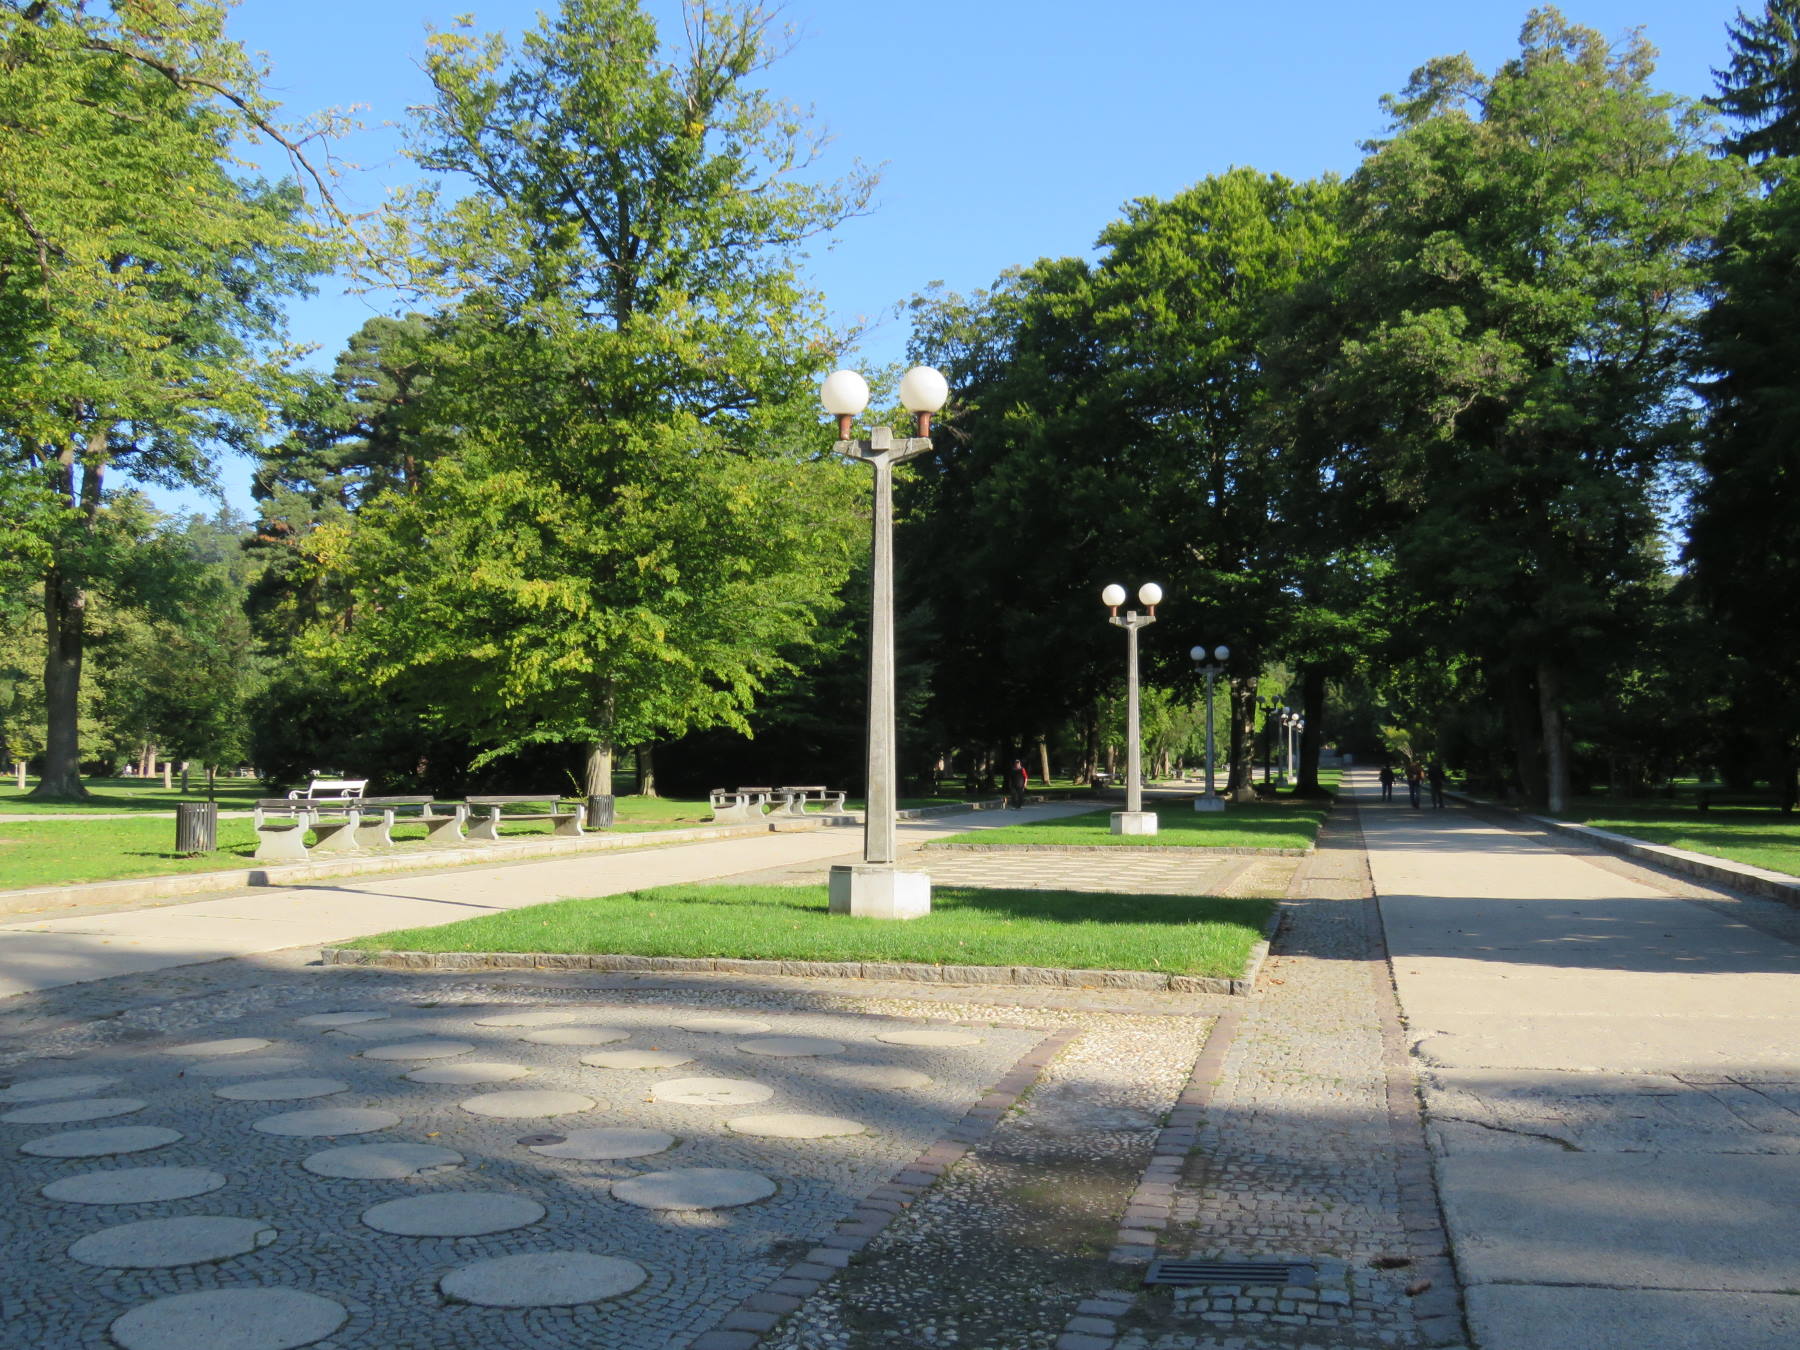 Začenja se obnova promenade v Mestnem parku, znana je zasaditev